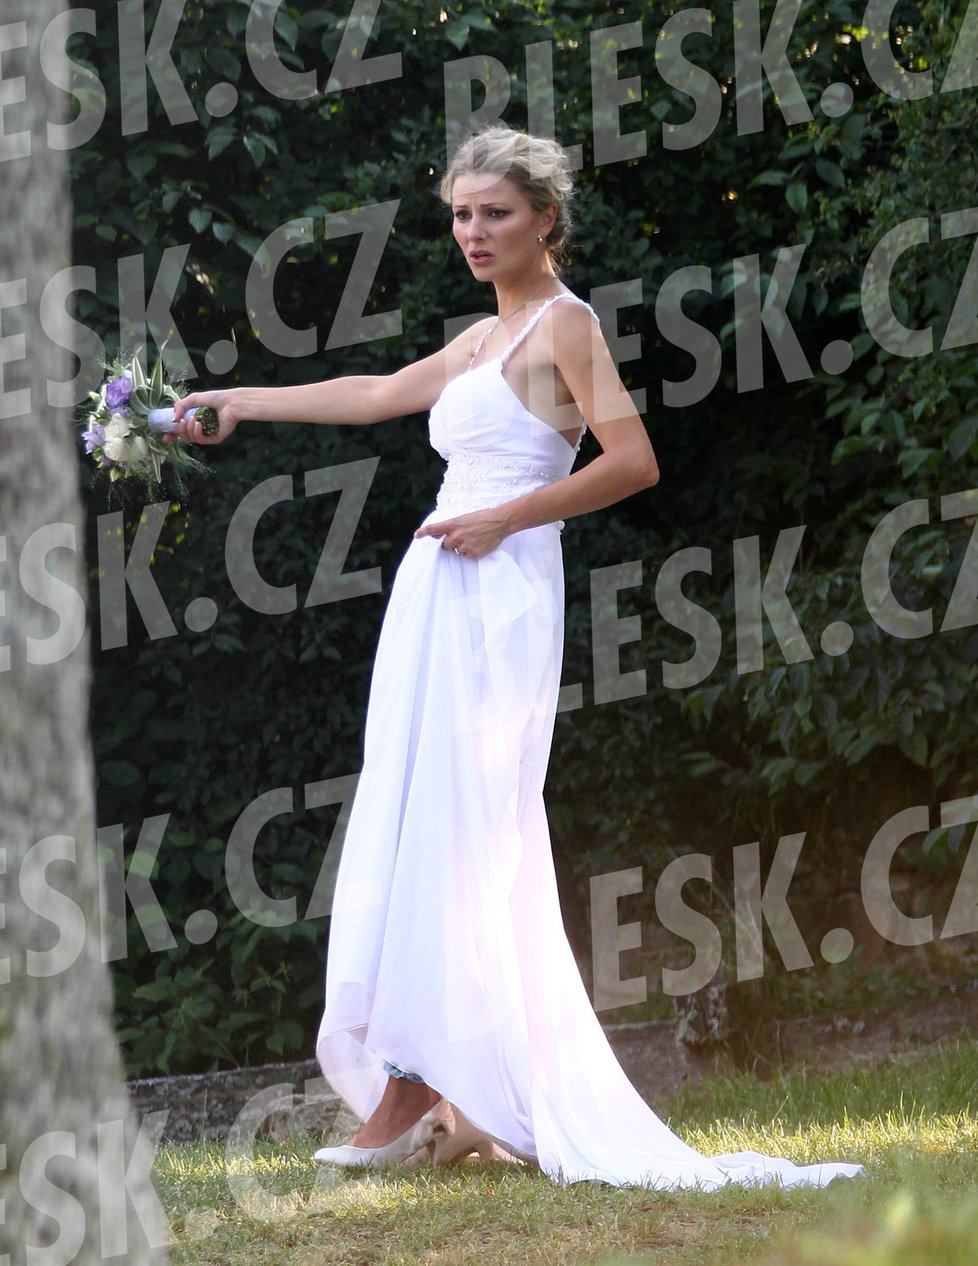 Sexbomba Kocurová měla na sobě jednoduché bílé šaty, ve kterých vypadala krásně